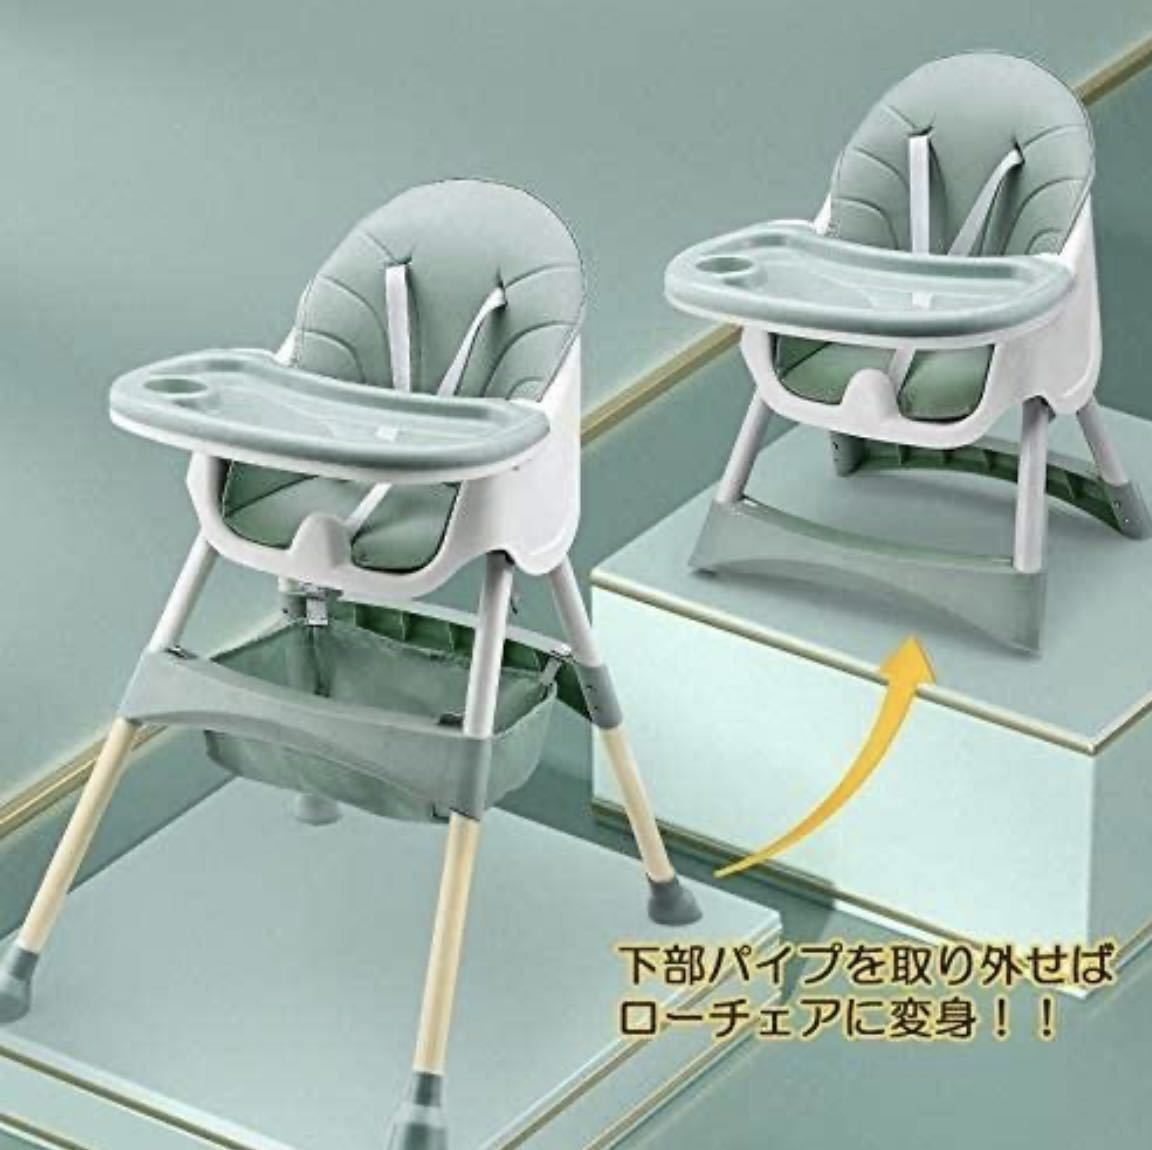 * не использовался товар baby высокий стул low стул детский стул стол стул ребенок стул складной детский стул многофункциональный Северная Европа способ GR зеленый 